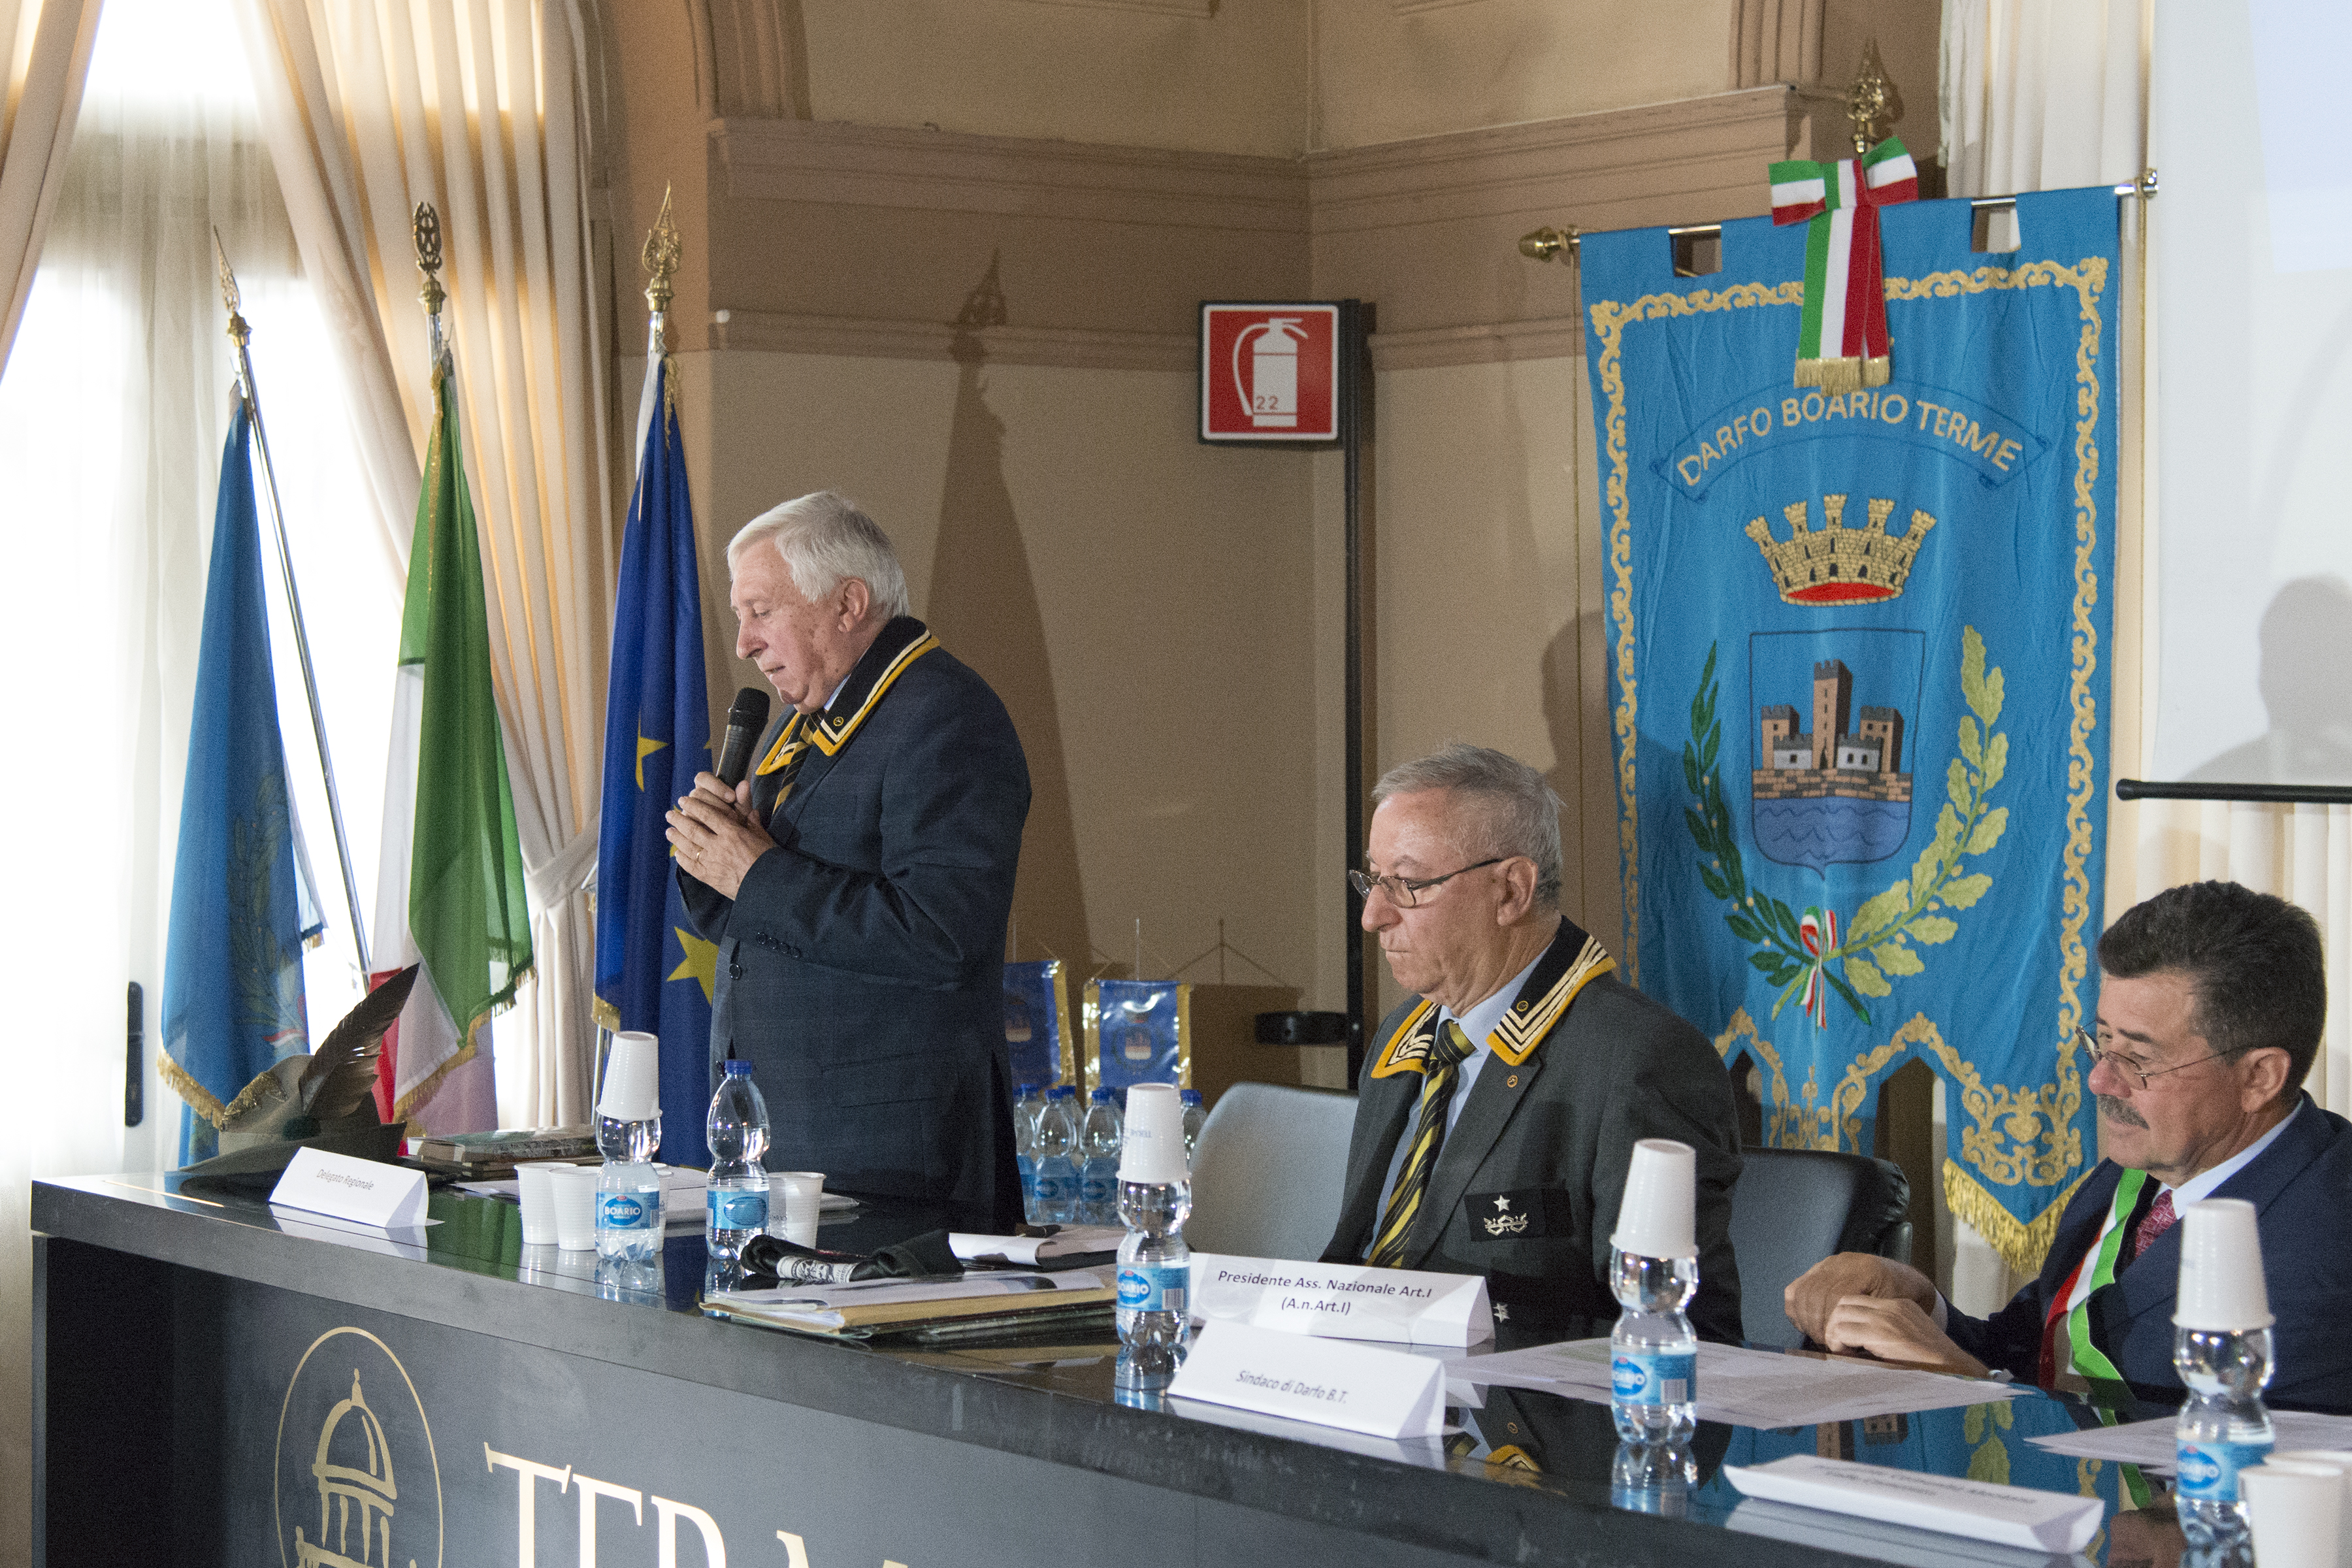 L’intervento del delegato regionale della Lombardia, Giordano Pochintesta (Foto M. Bossi)